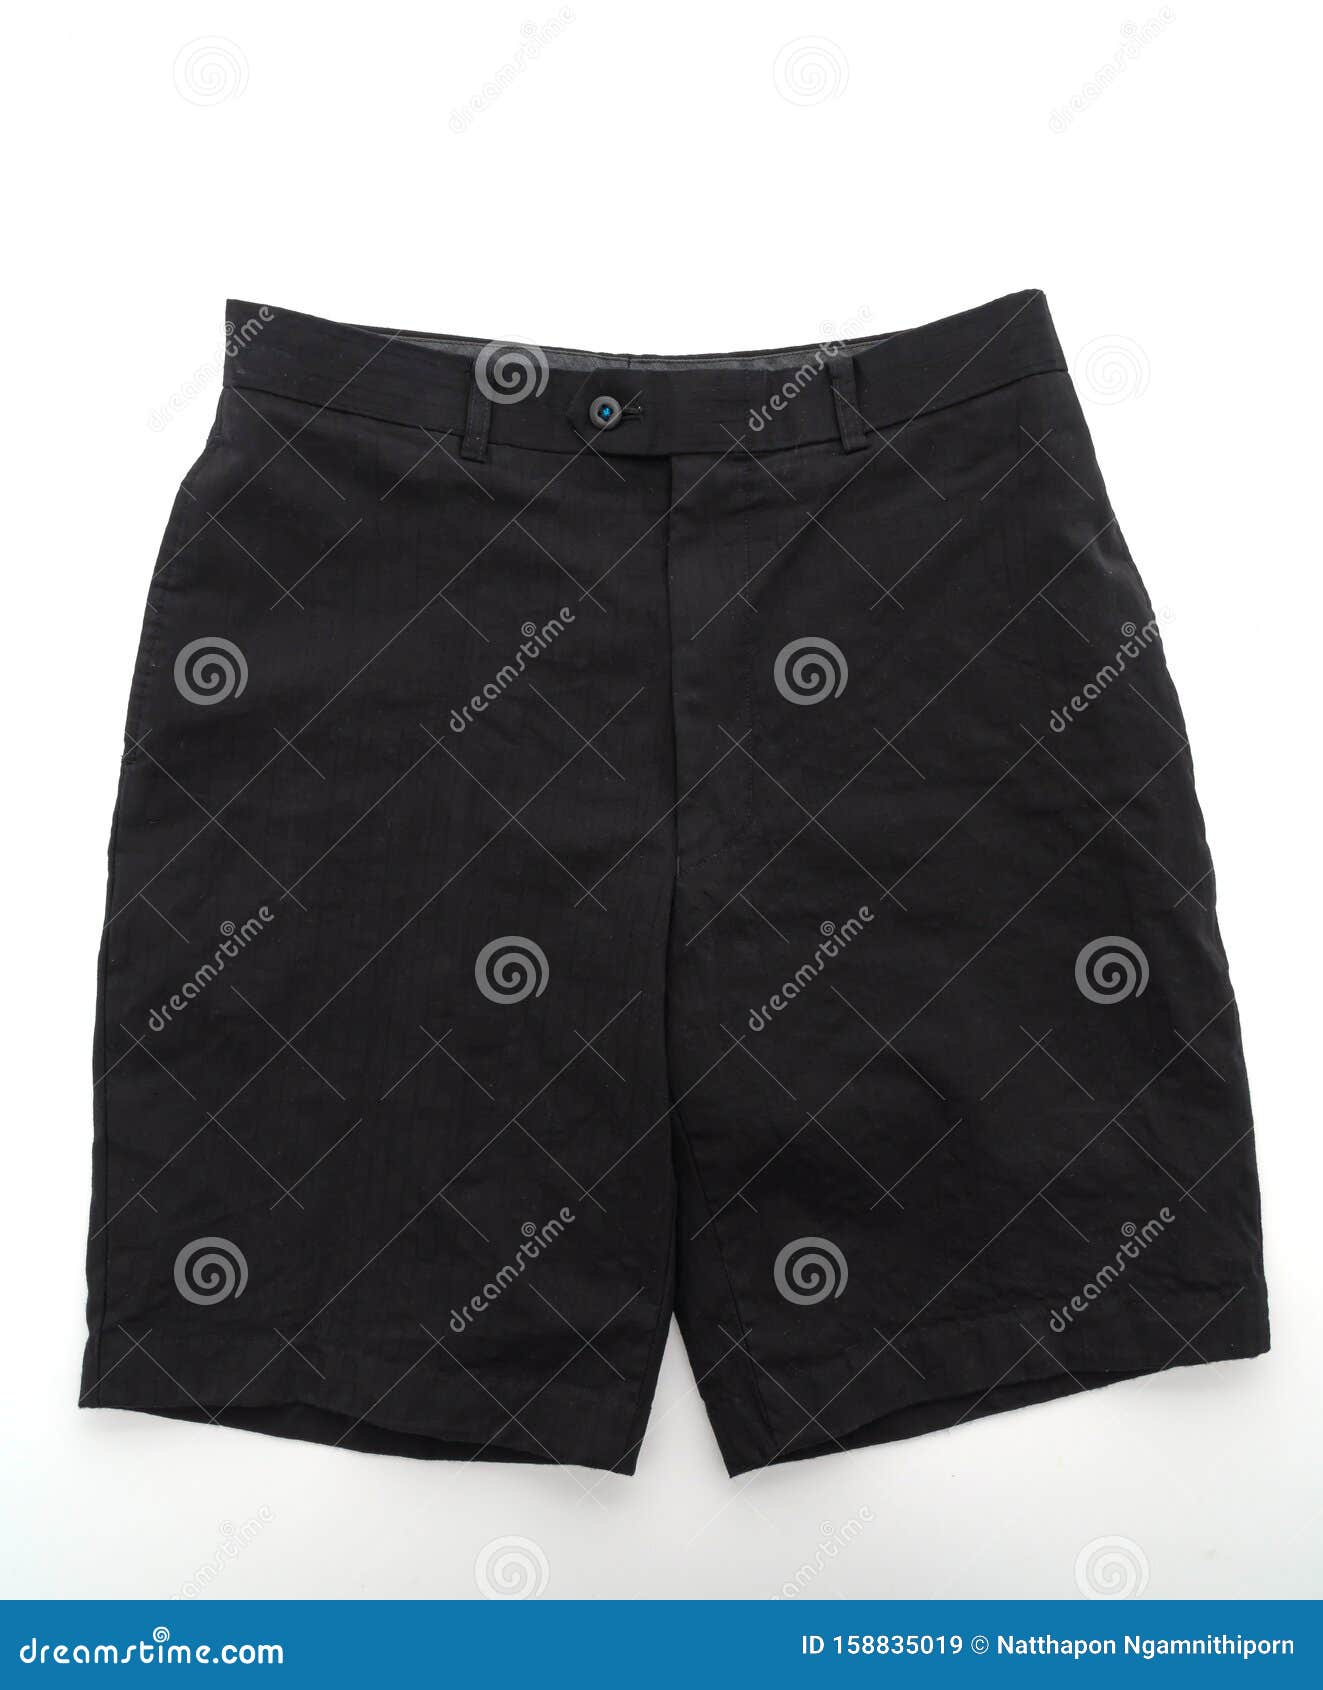 Short Pants on White Background Stock Image - Image of belt, stylish ...